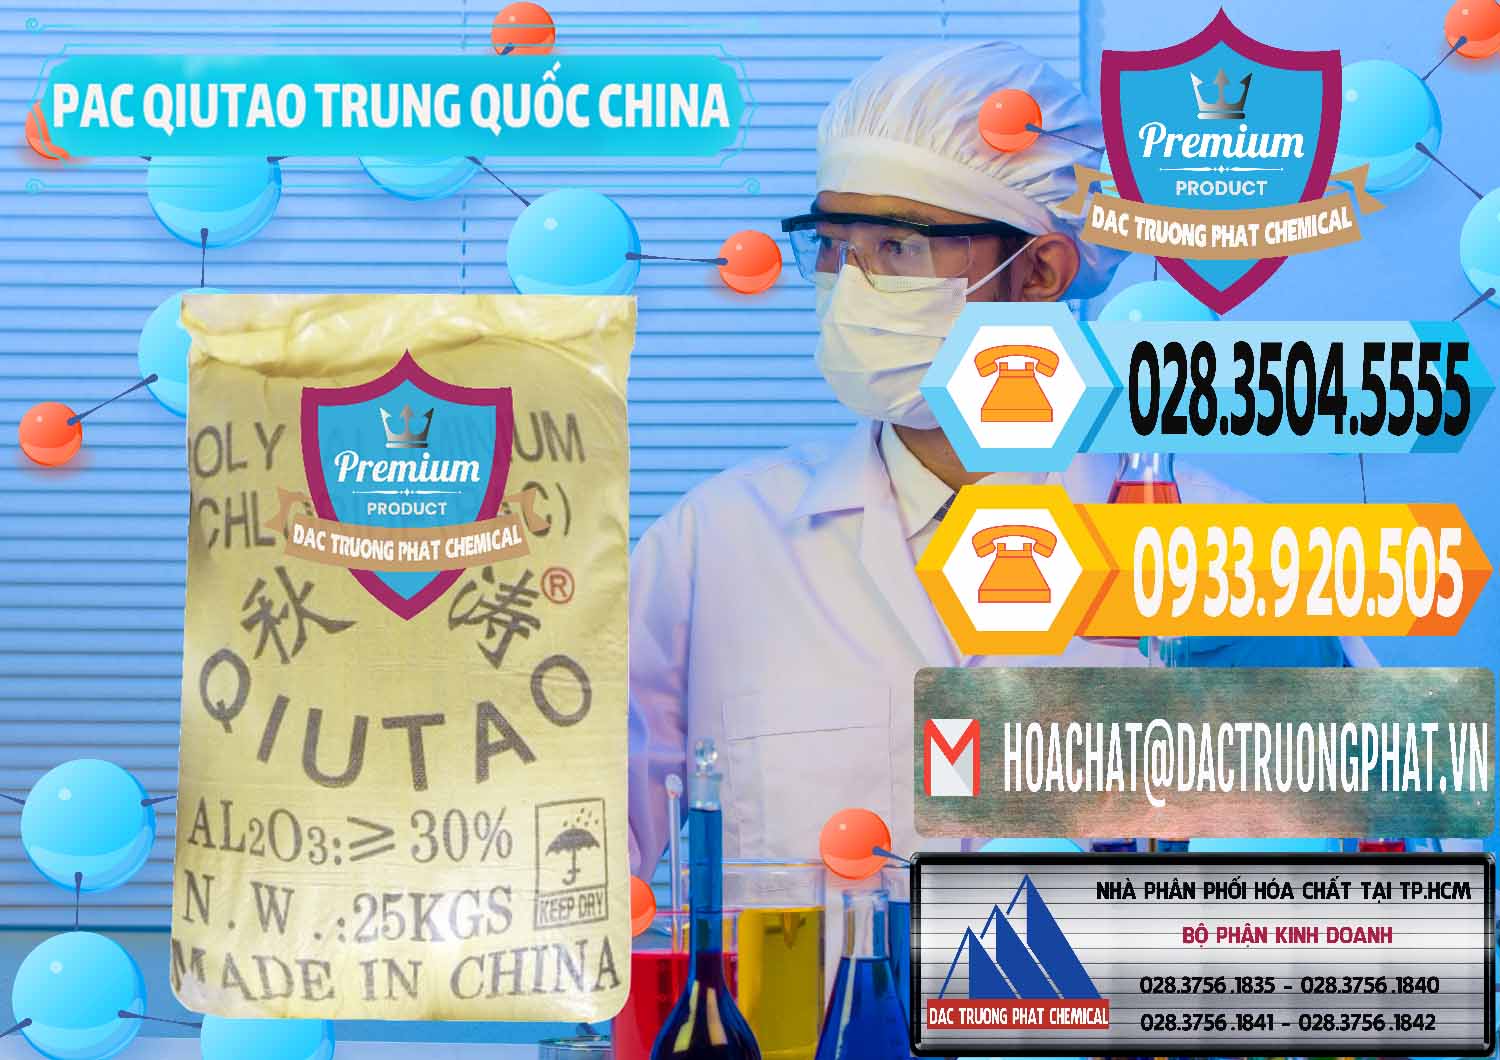 Cty chuyên bán - phân phối PAC - Polyaluminium Chloride Qiutao Trung Quốc China - 0267 - Cty cung cấp - bán hóa chất tại TP.HCM - hoachattayrua.net